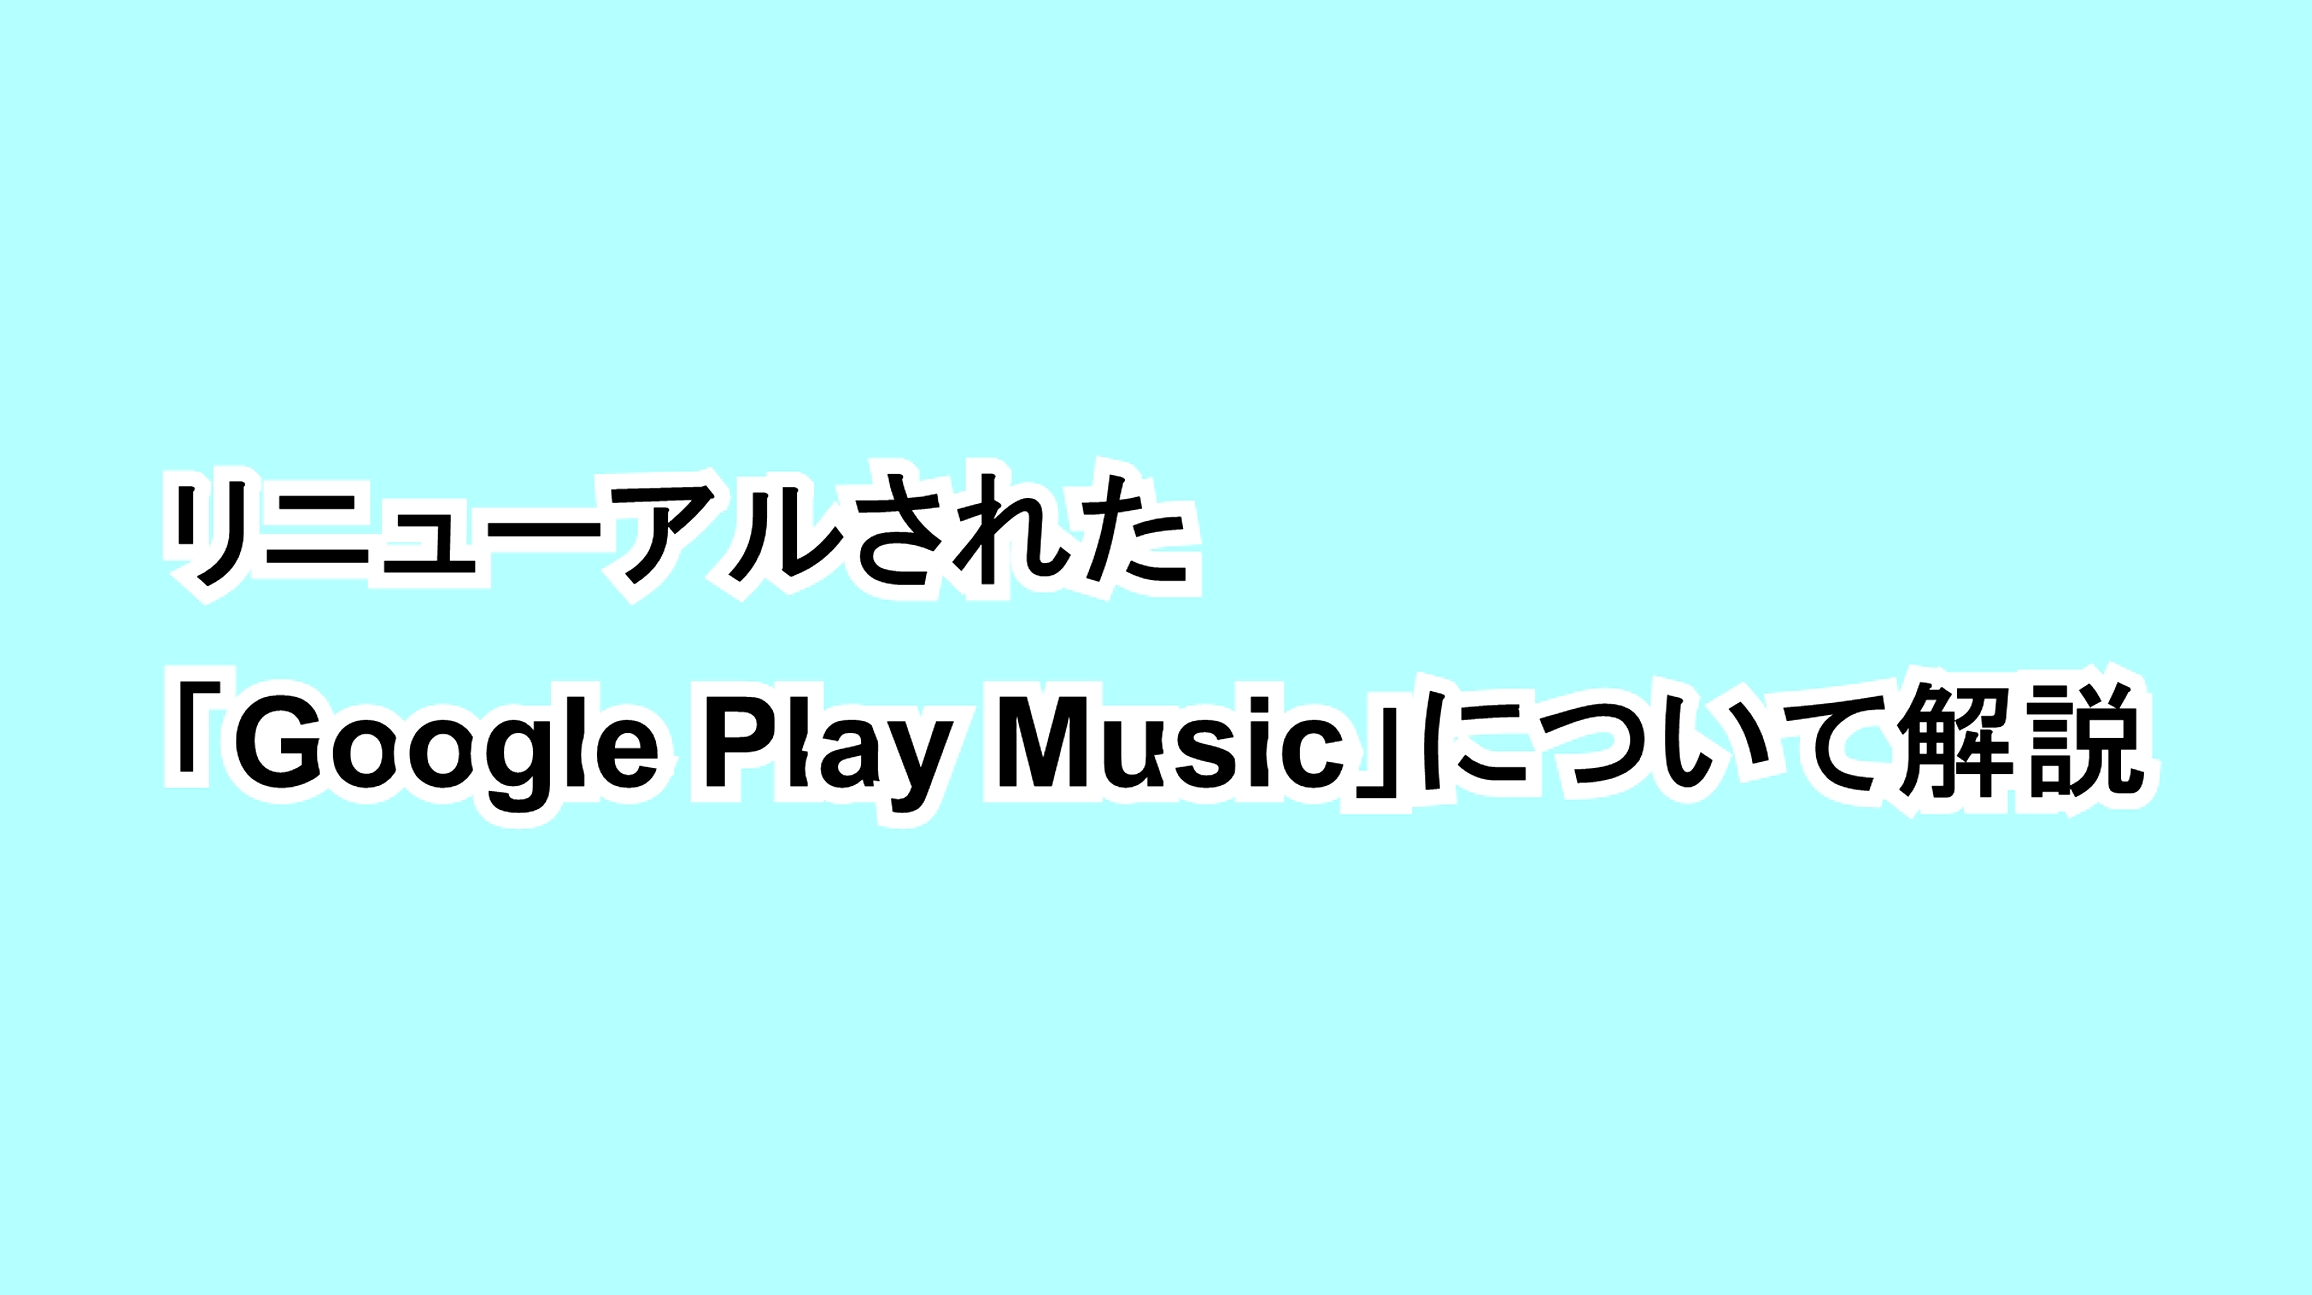 リニューアルされた「Google Play Music」について解説